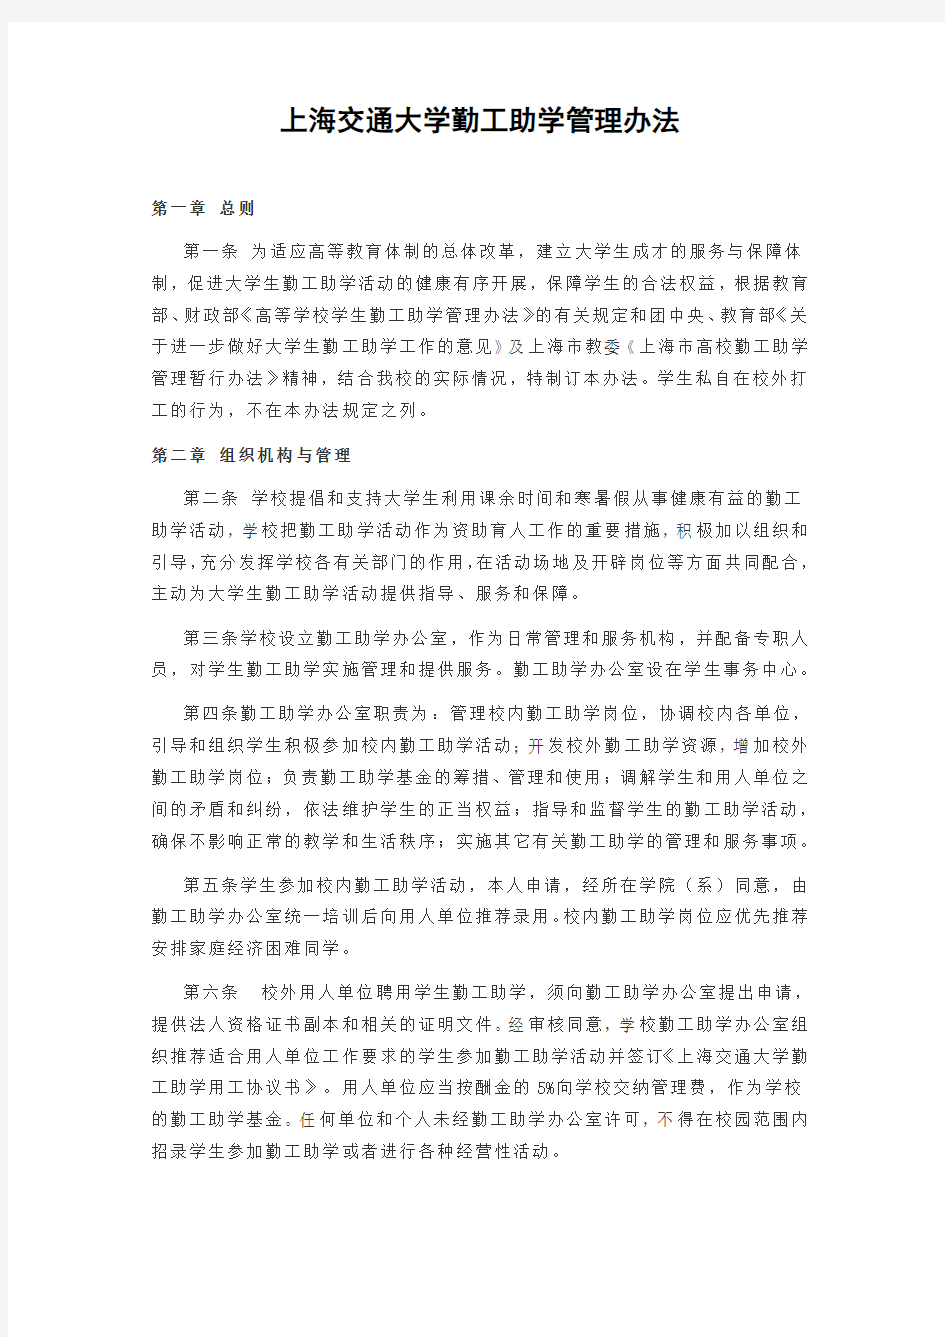 上海交通大学勤工助学管理办法